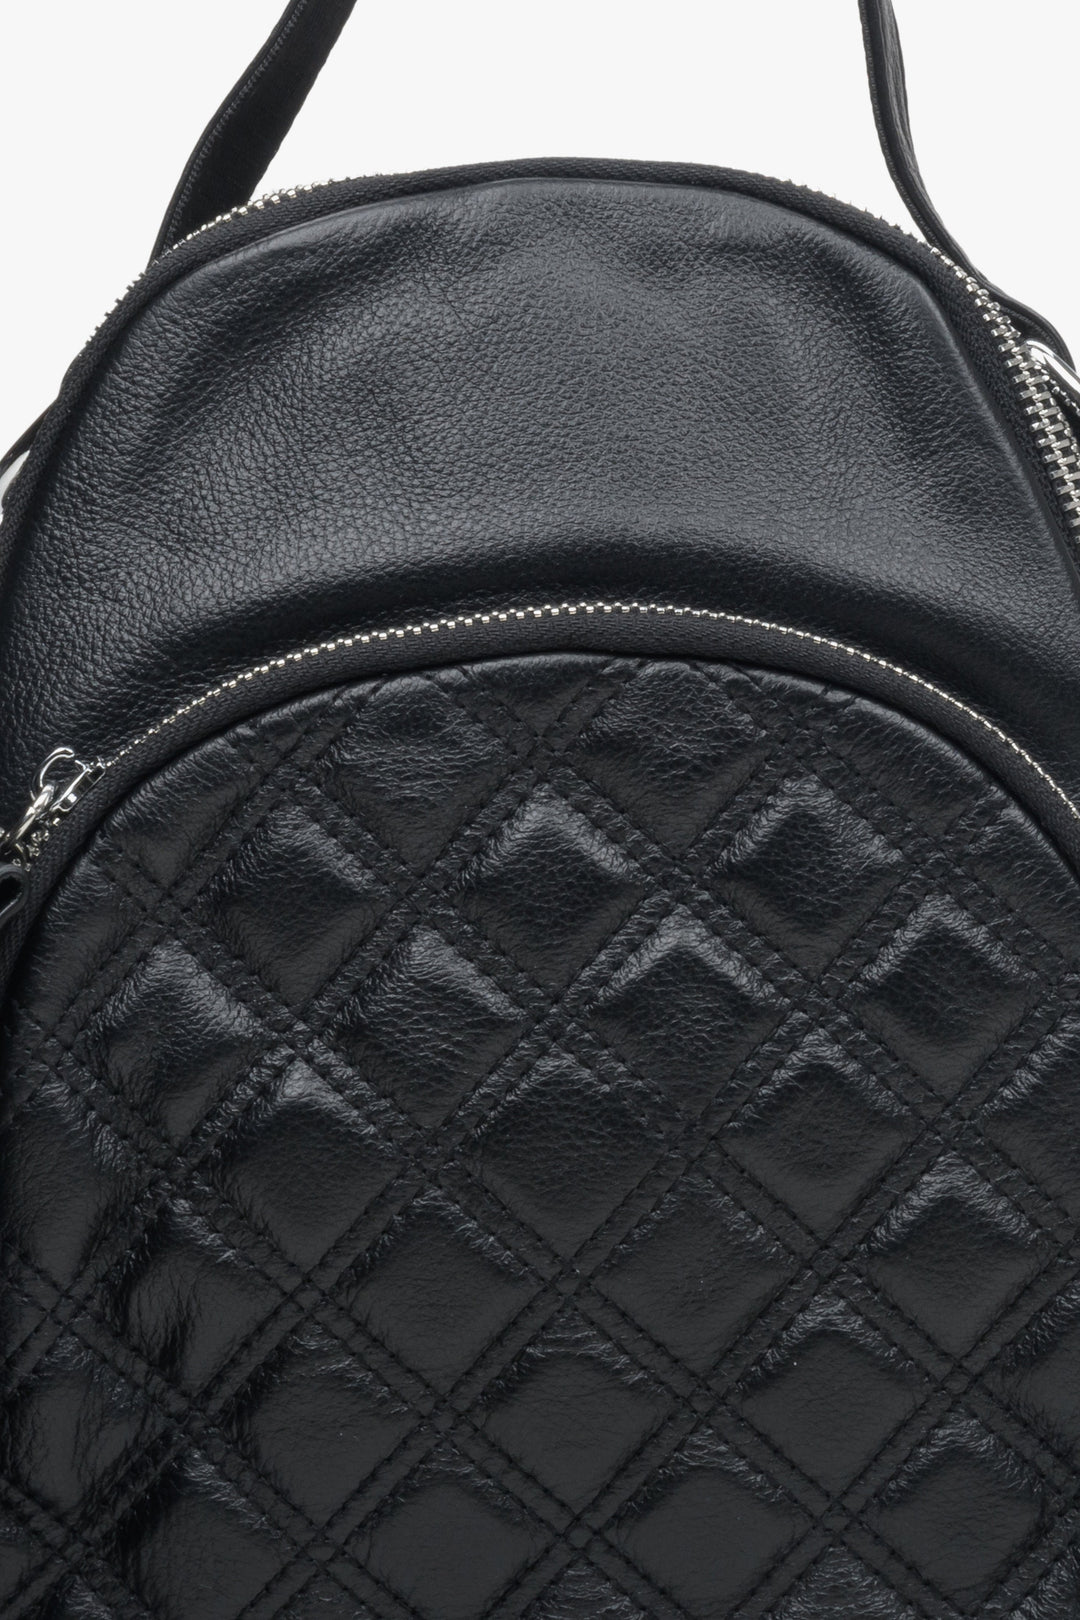 Skórzany, mały plecak damski Estro w kolorze czarnym - zbliżenie na detale.